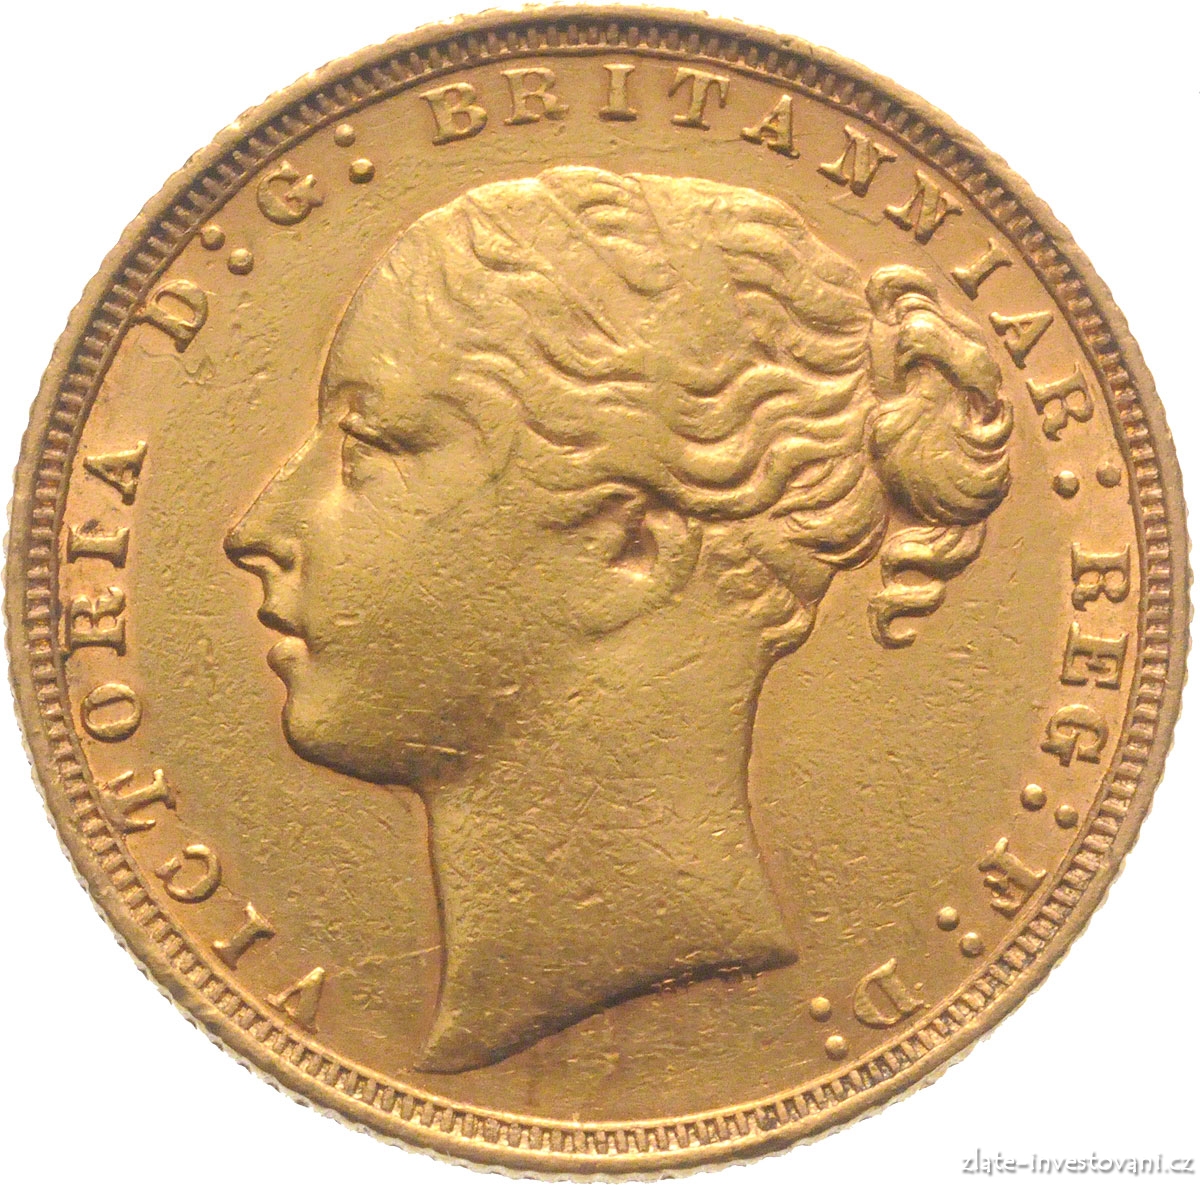 Investiční zlatá mince britský Sovereign - Victoria první portrét (typ Pistrucci)